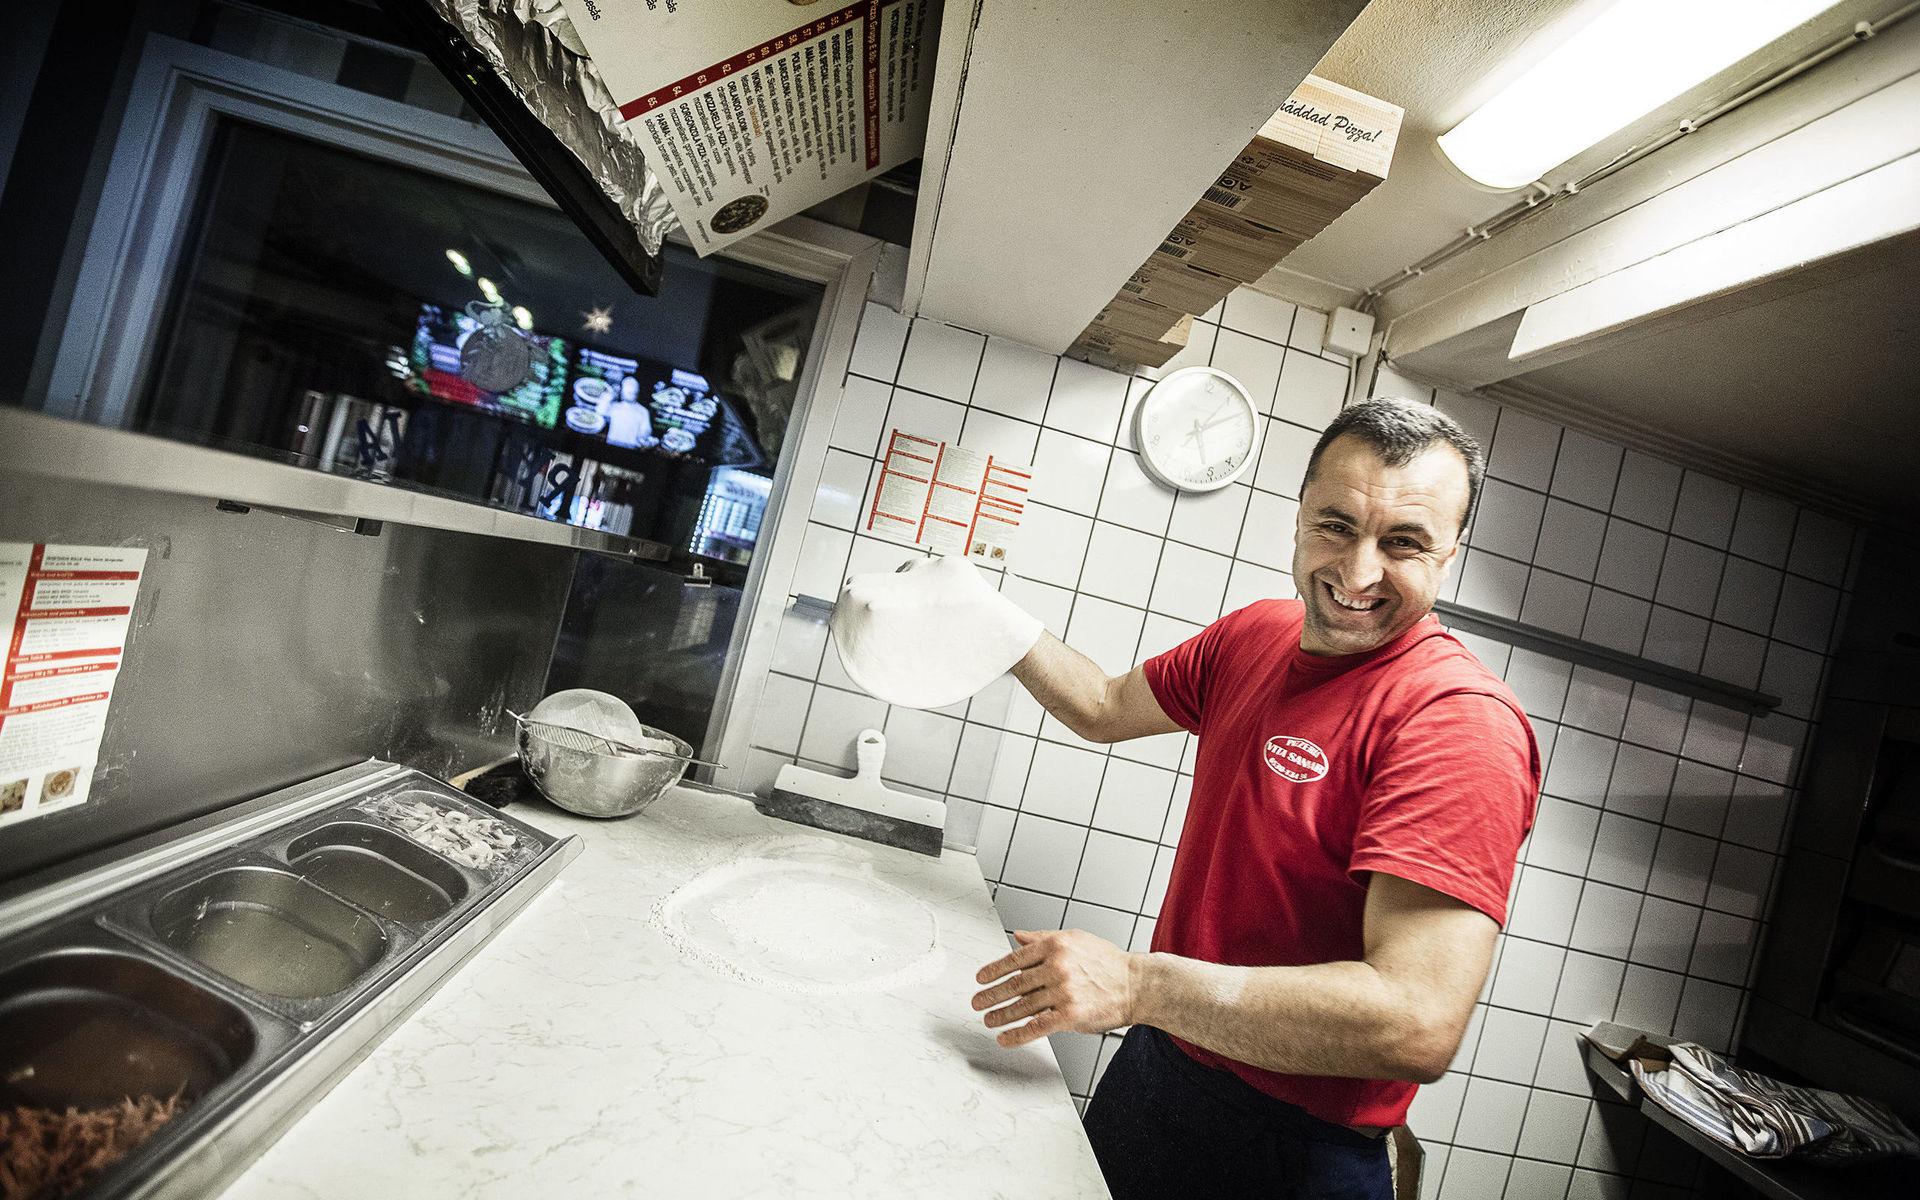 Enligt TTelas omröstning tycker läsarna att Vita Sannar pizzeria är en av de bästa pizzeriorna i Mellerud. 